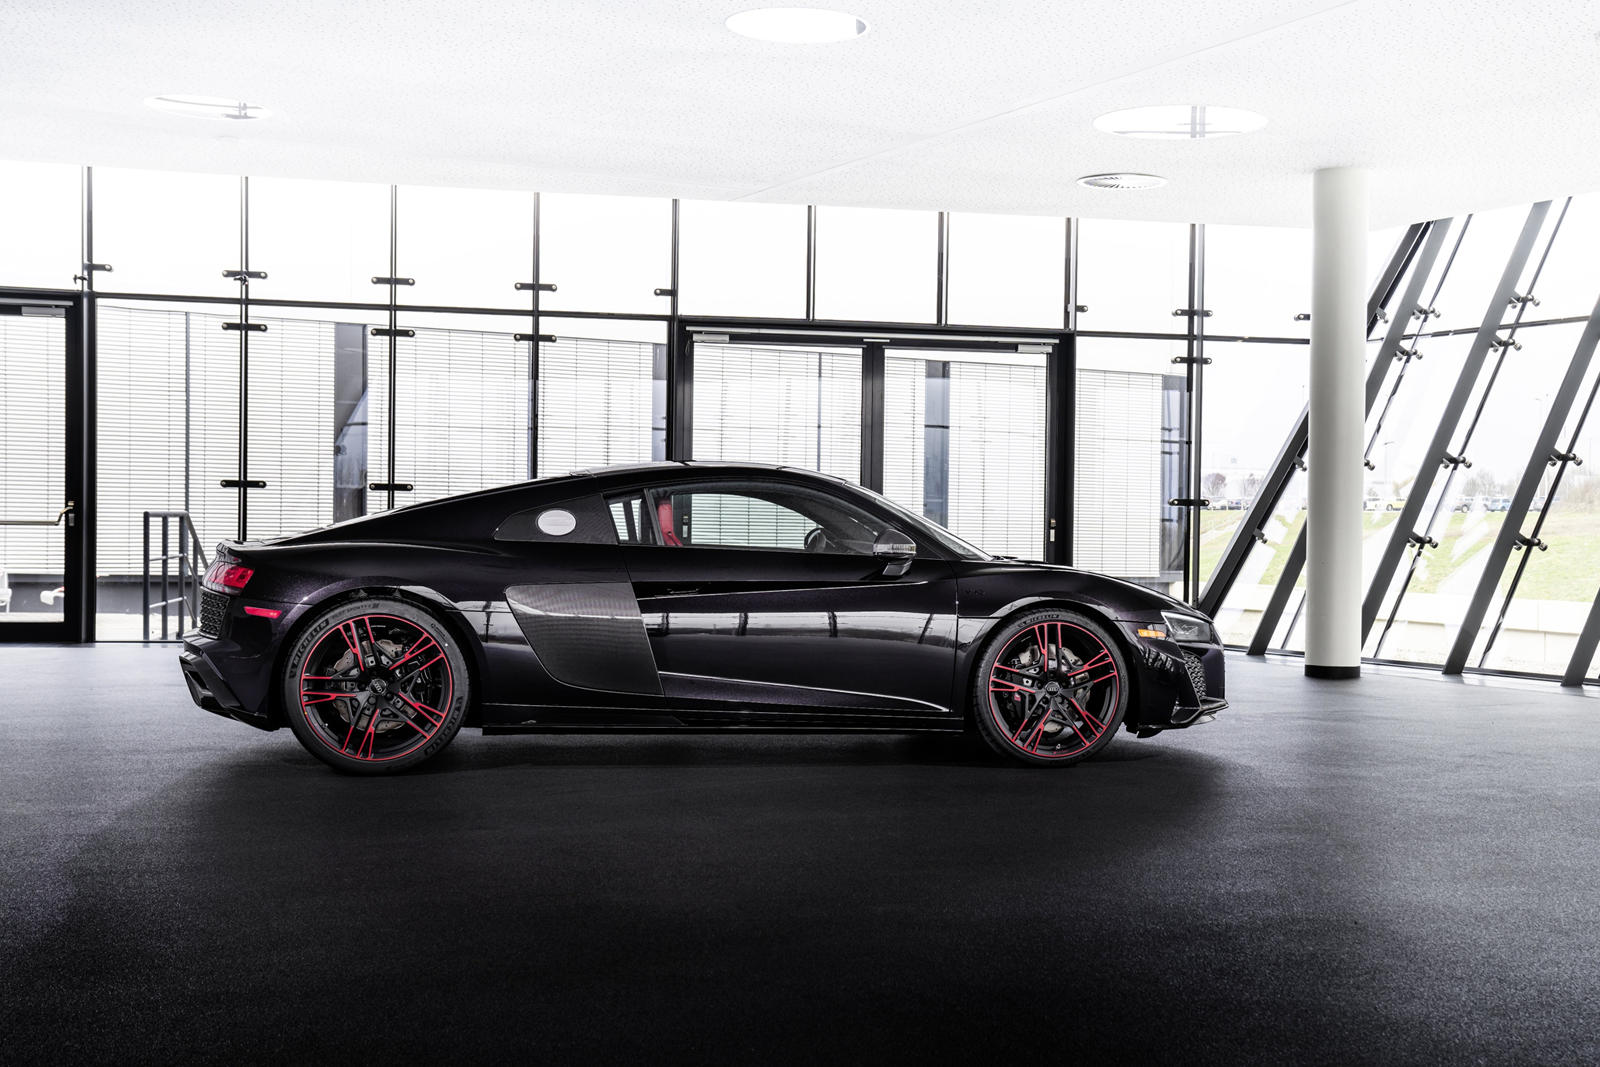 R8 присоединяется к выпуску RS5 Panther 2019 года, который был ограничен всего 100 экземплярами в США и включал ту же окраску с эффектом кристаллов Panther Black и красный интерьер. Audi заявляет, что только избранные дилеры будут получать R8 Panther